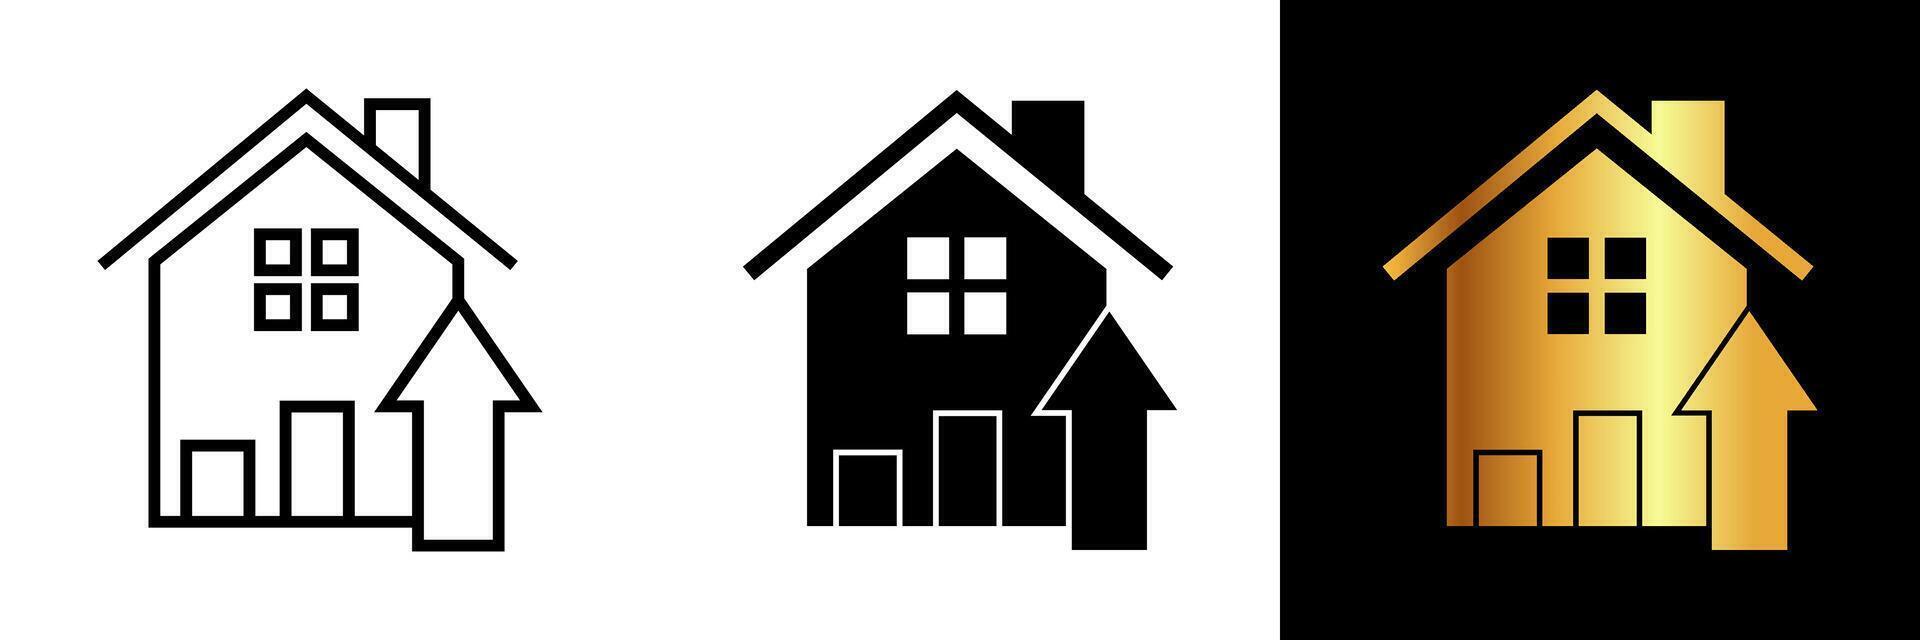 das Haus oben Pfeil Symbol kombiniert das symbolisch Darstellung von ein Zuhause mit das gerichtet nach oben Pfeil, vermitteln das Konzept von Fortschritt, Verbesserung, und erhöht Leben. vektor